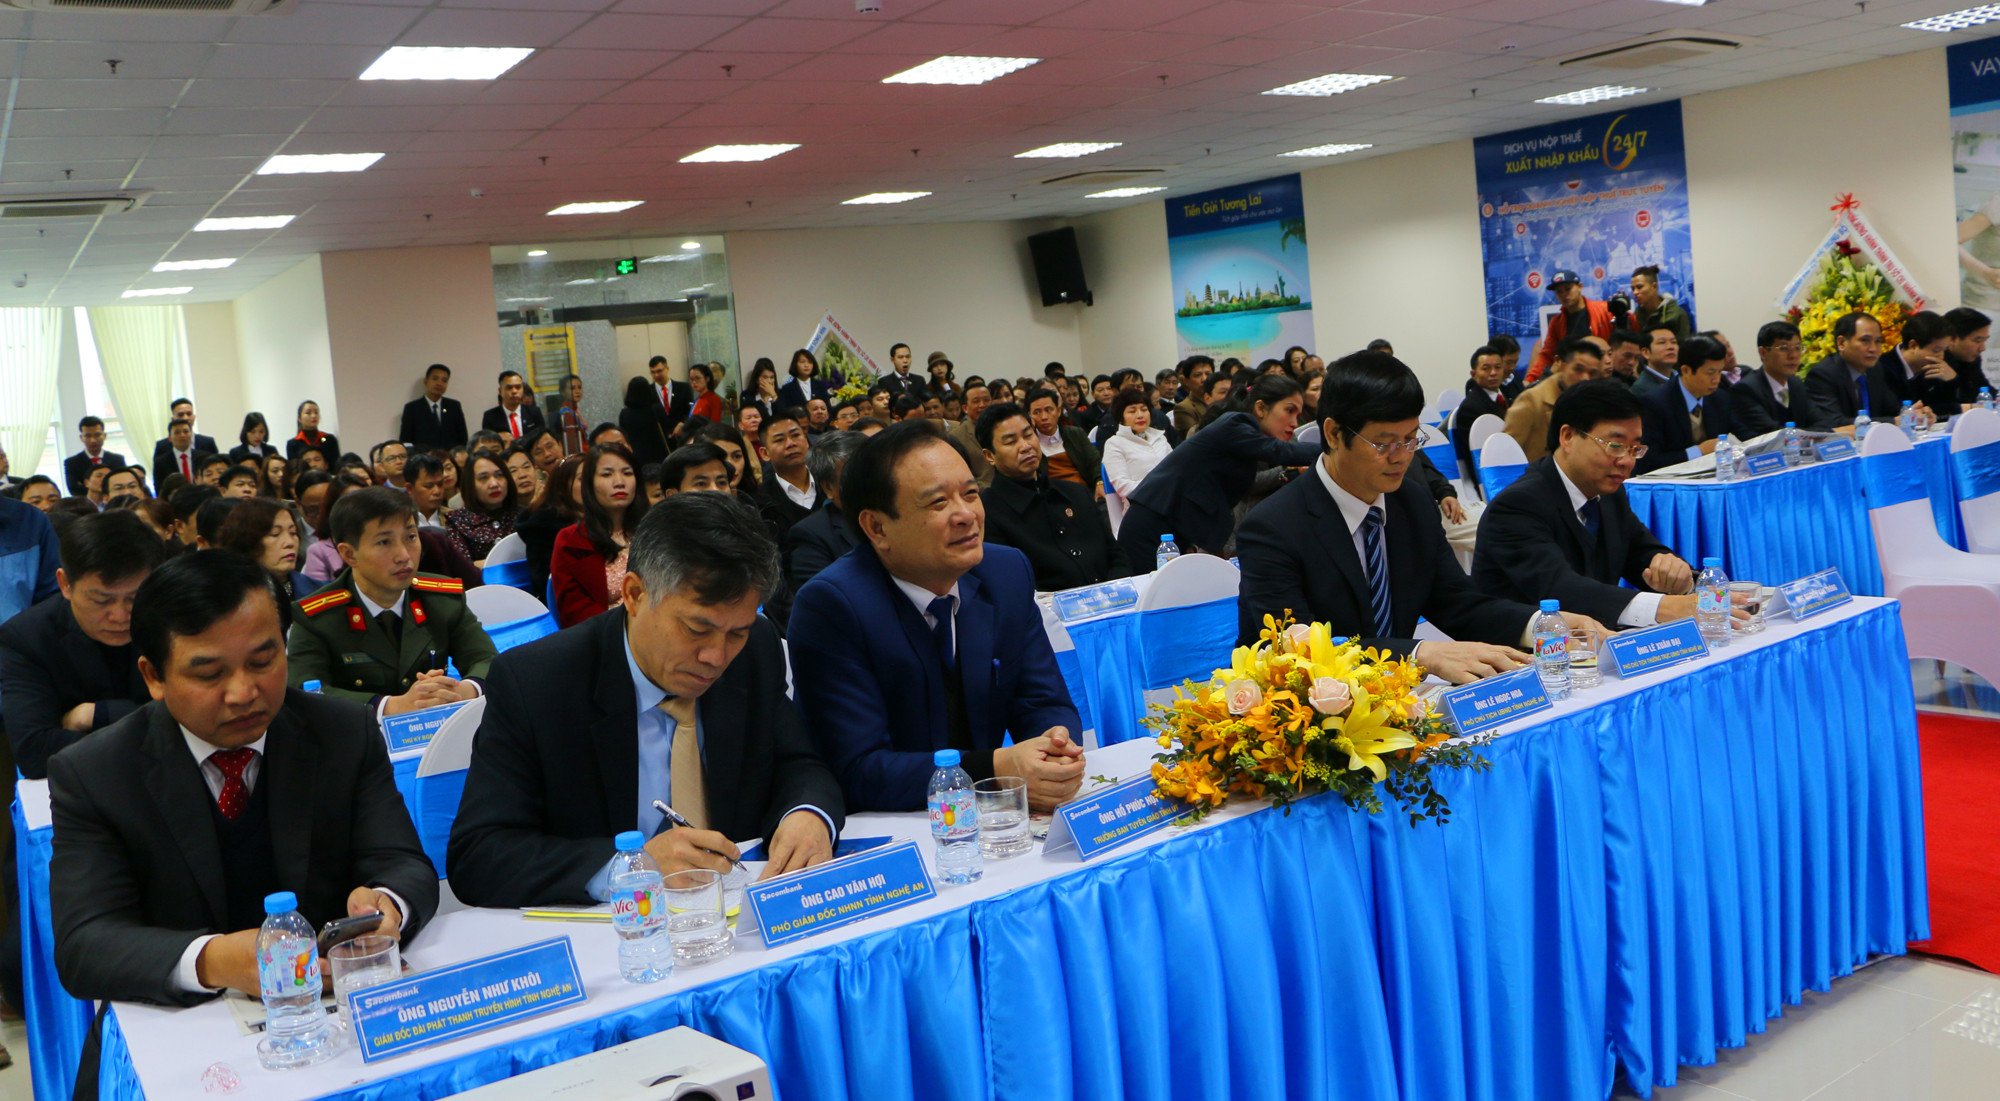 Đại biểu đại diện cho lãnh đạo tỉnh, Ngân hàng nhà nước và đông đảo khách hàng dự khai trương của Sacombank tại Nghệ An. Ảnh: Nguyễn Hải